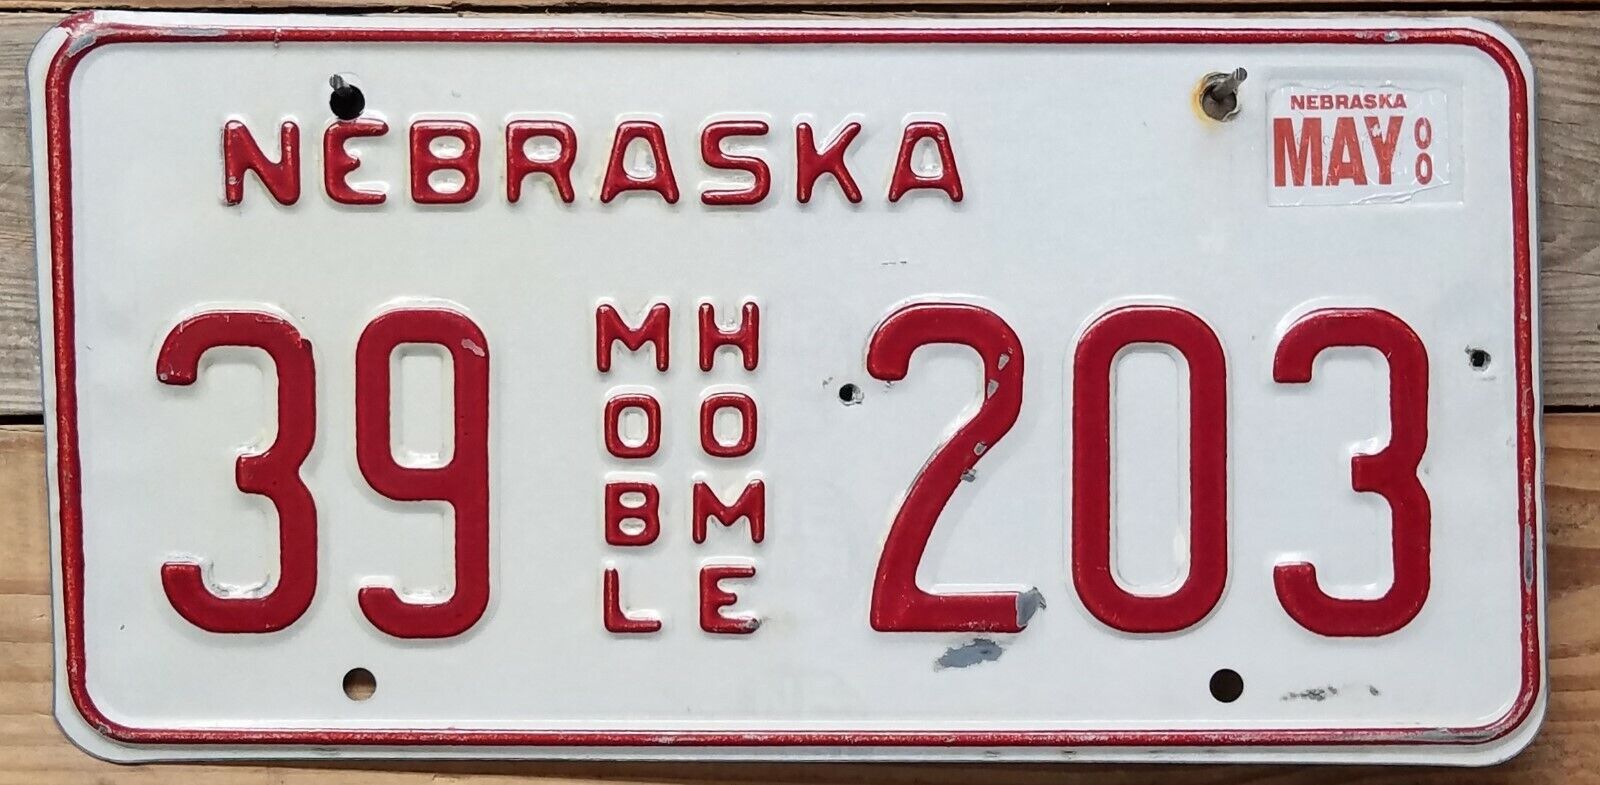 Nebraska expired 2000 Mobile Home Red On White License Plate ~ 39 203 - Embossed